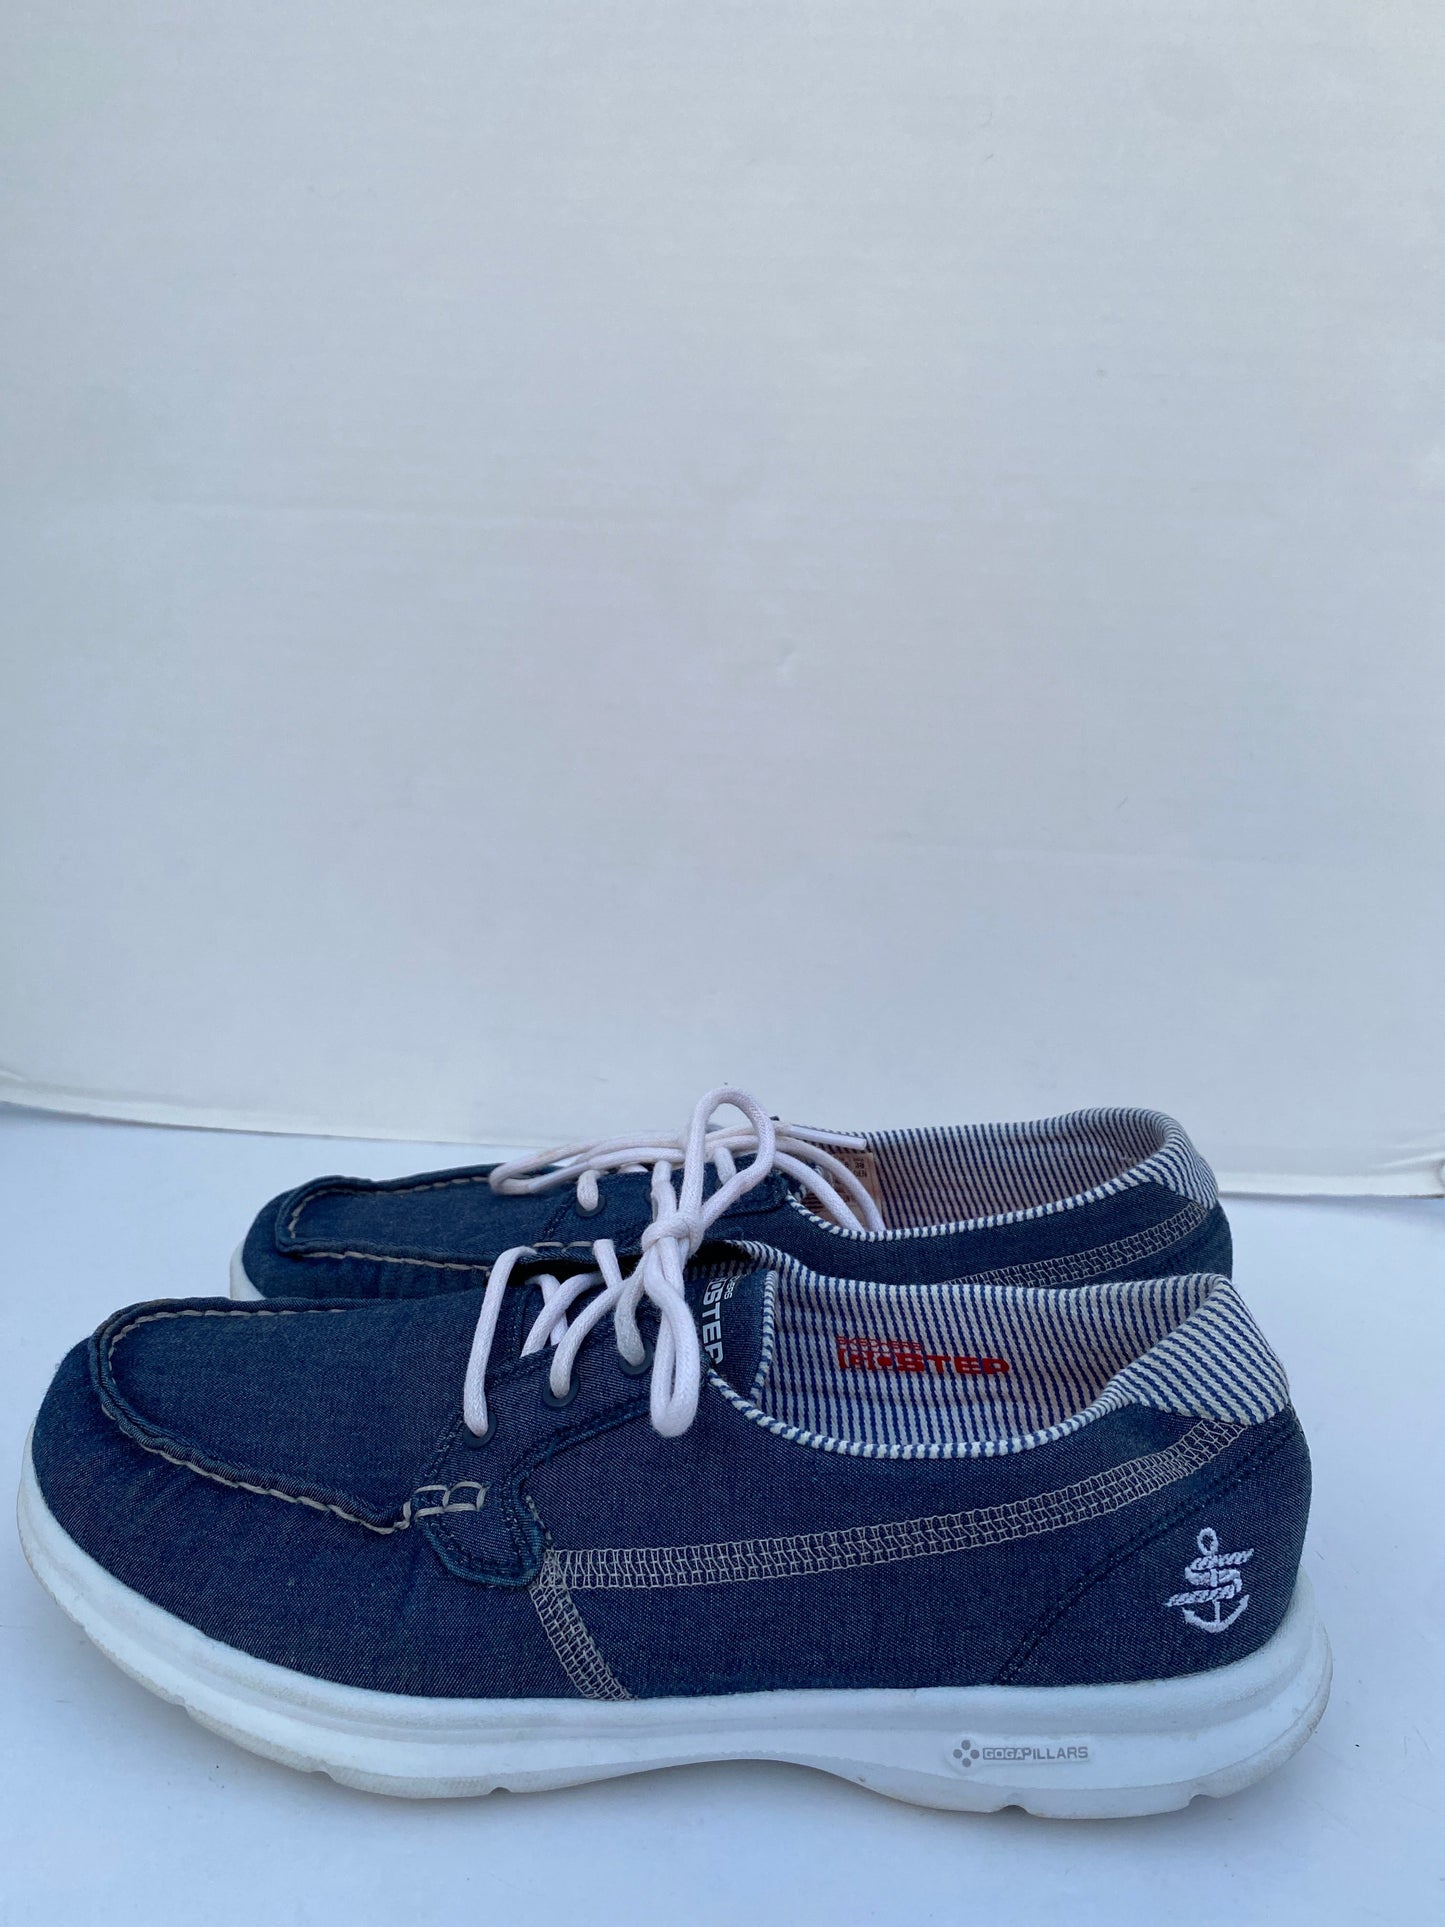 Blue Shoes Flats Skechers, Size 8.5